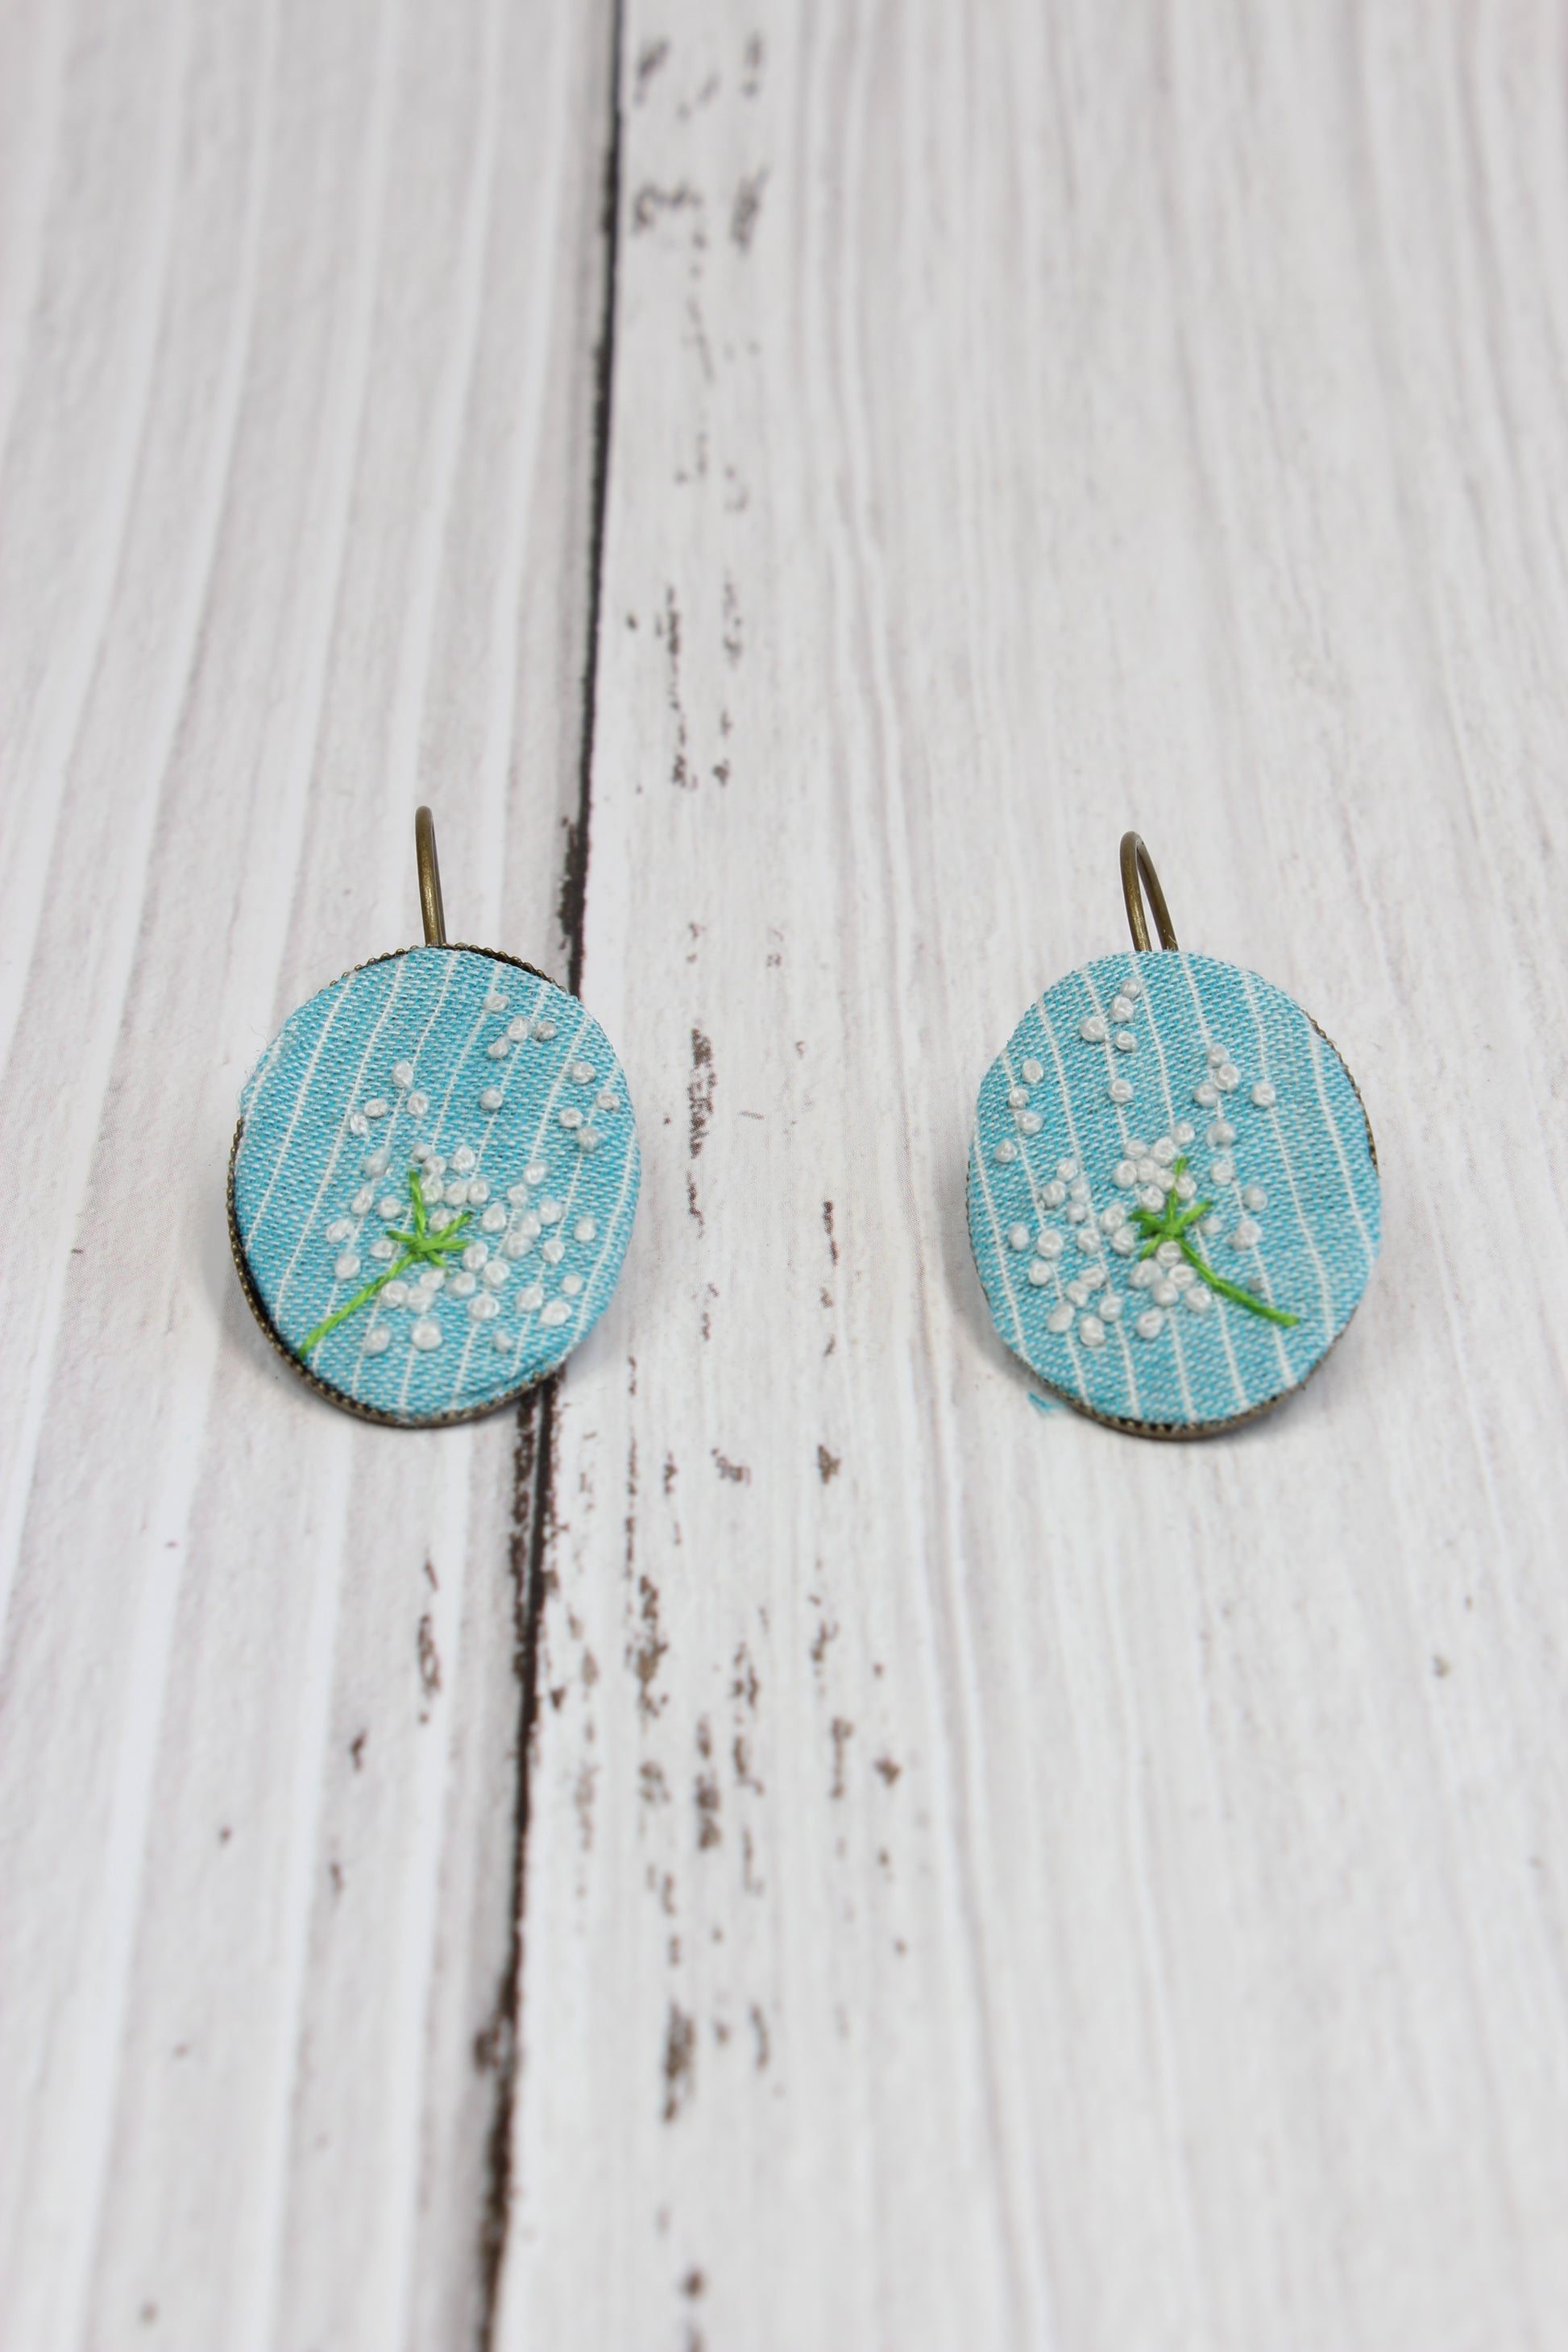 Embroidery Dandelion Wire Earrings